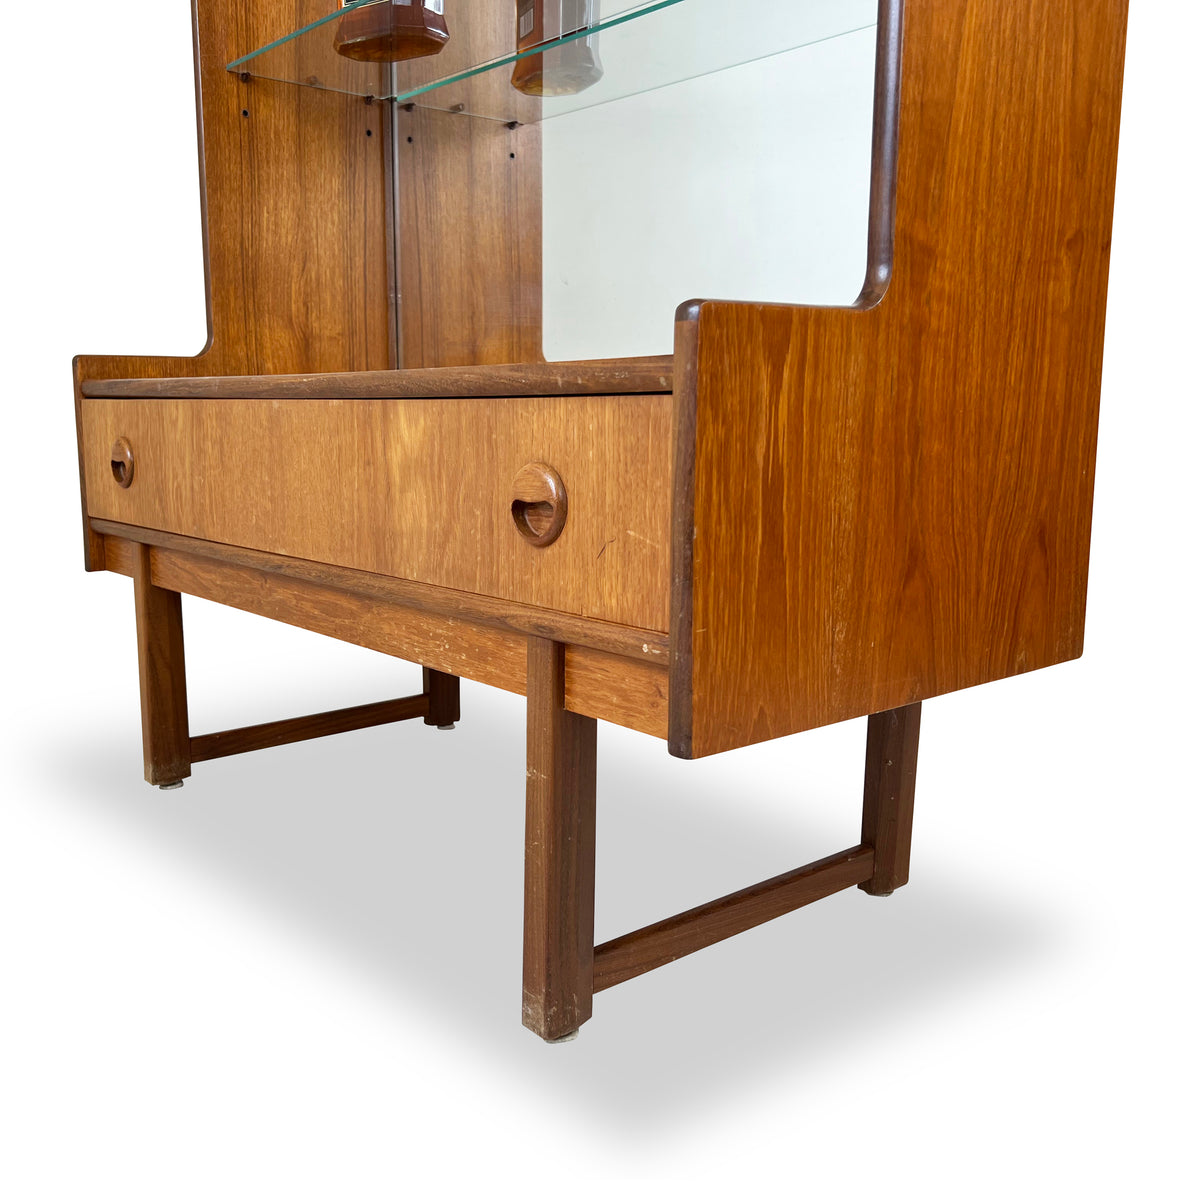 Teak Display Cabinet by Turnidge of London